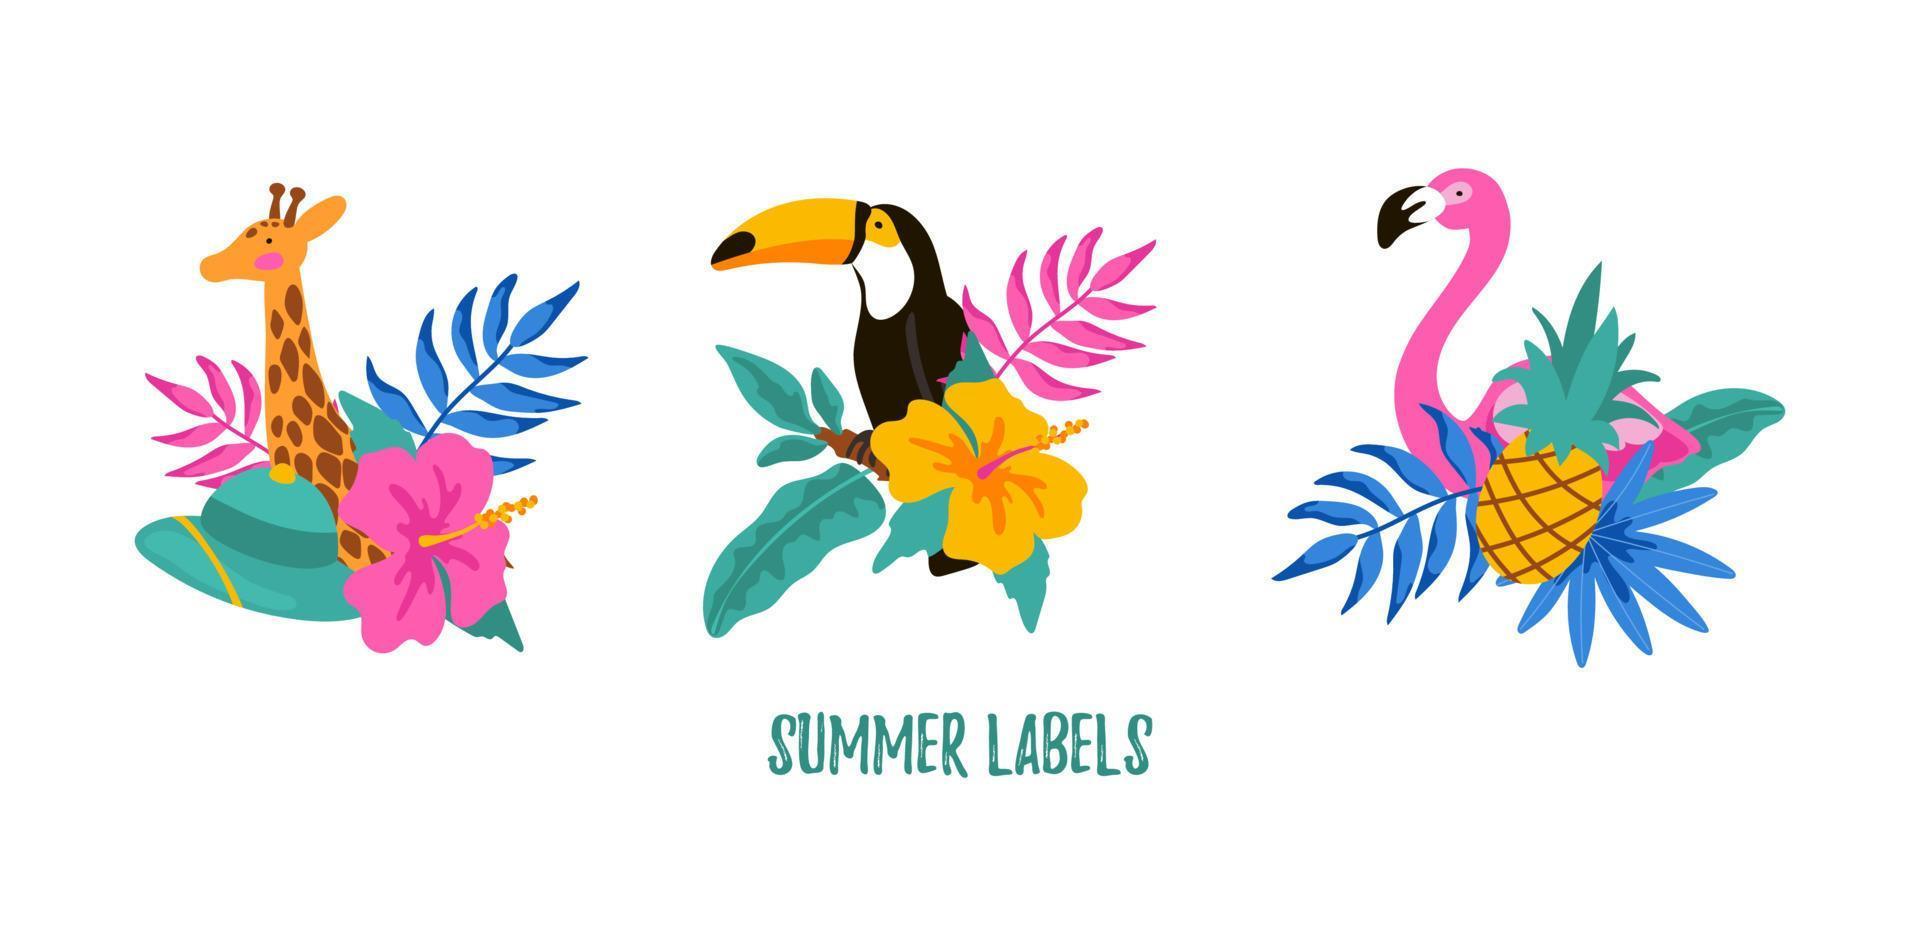 conjunto de etiquetas de verano dibujadas a mano con jirafa, flamenco, tucán, hojas tropicales, flores y piña. ilustración vectorial vector